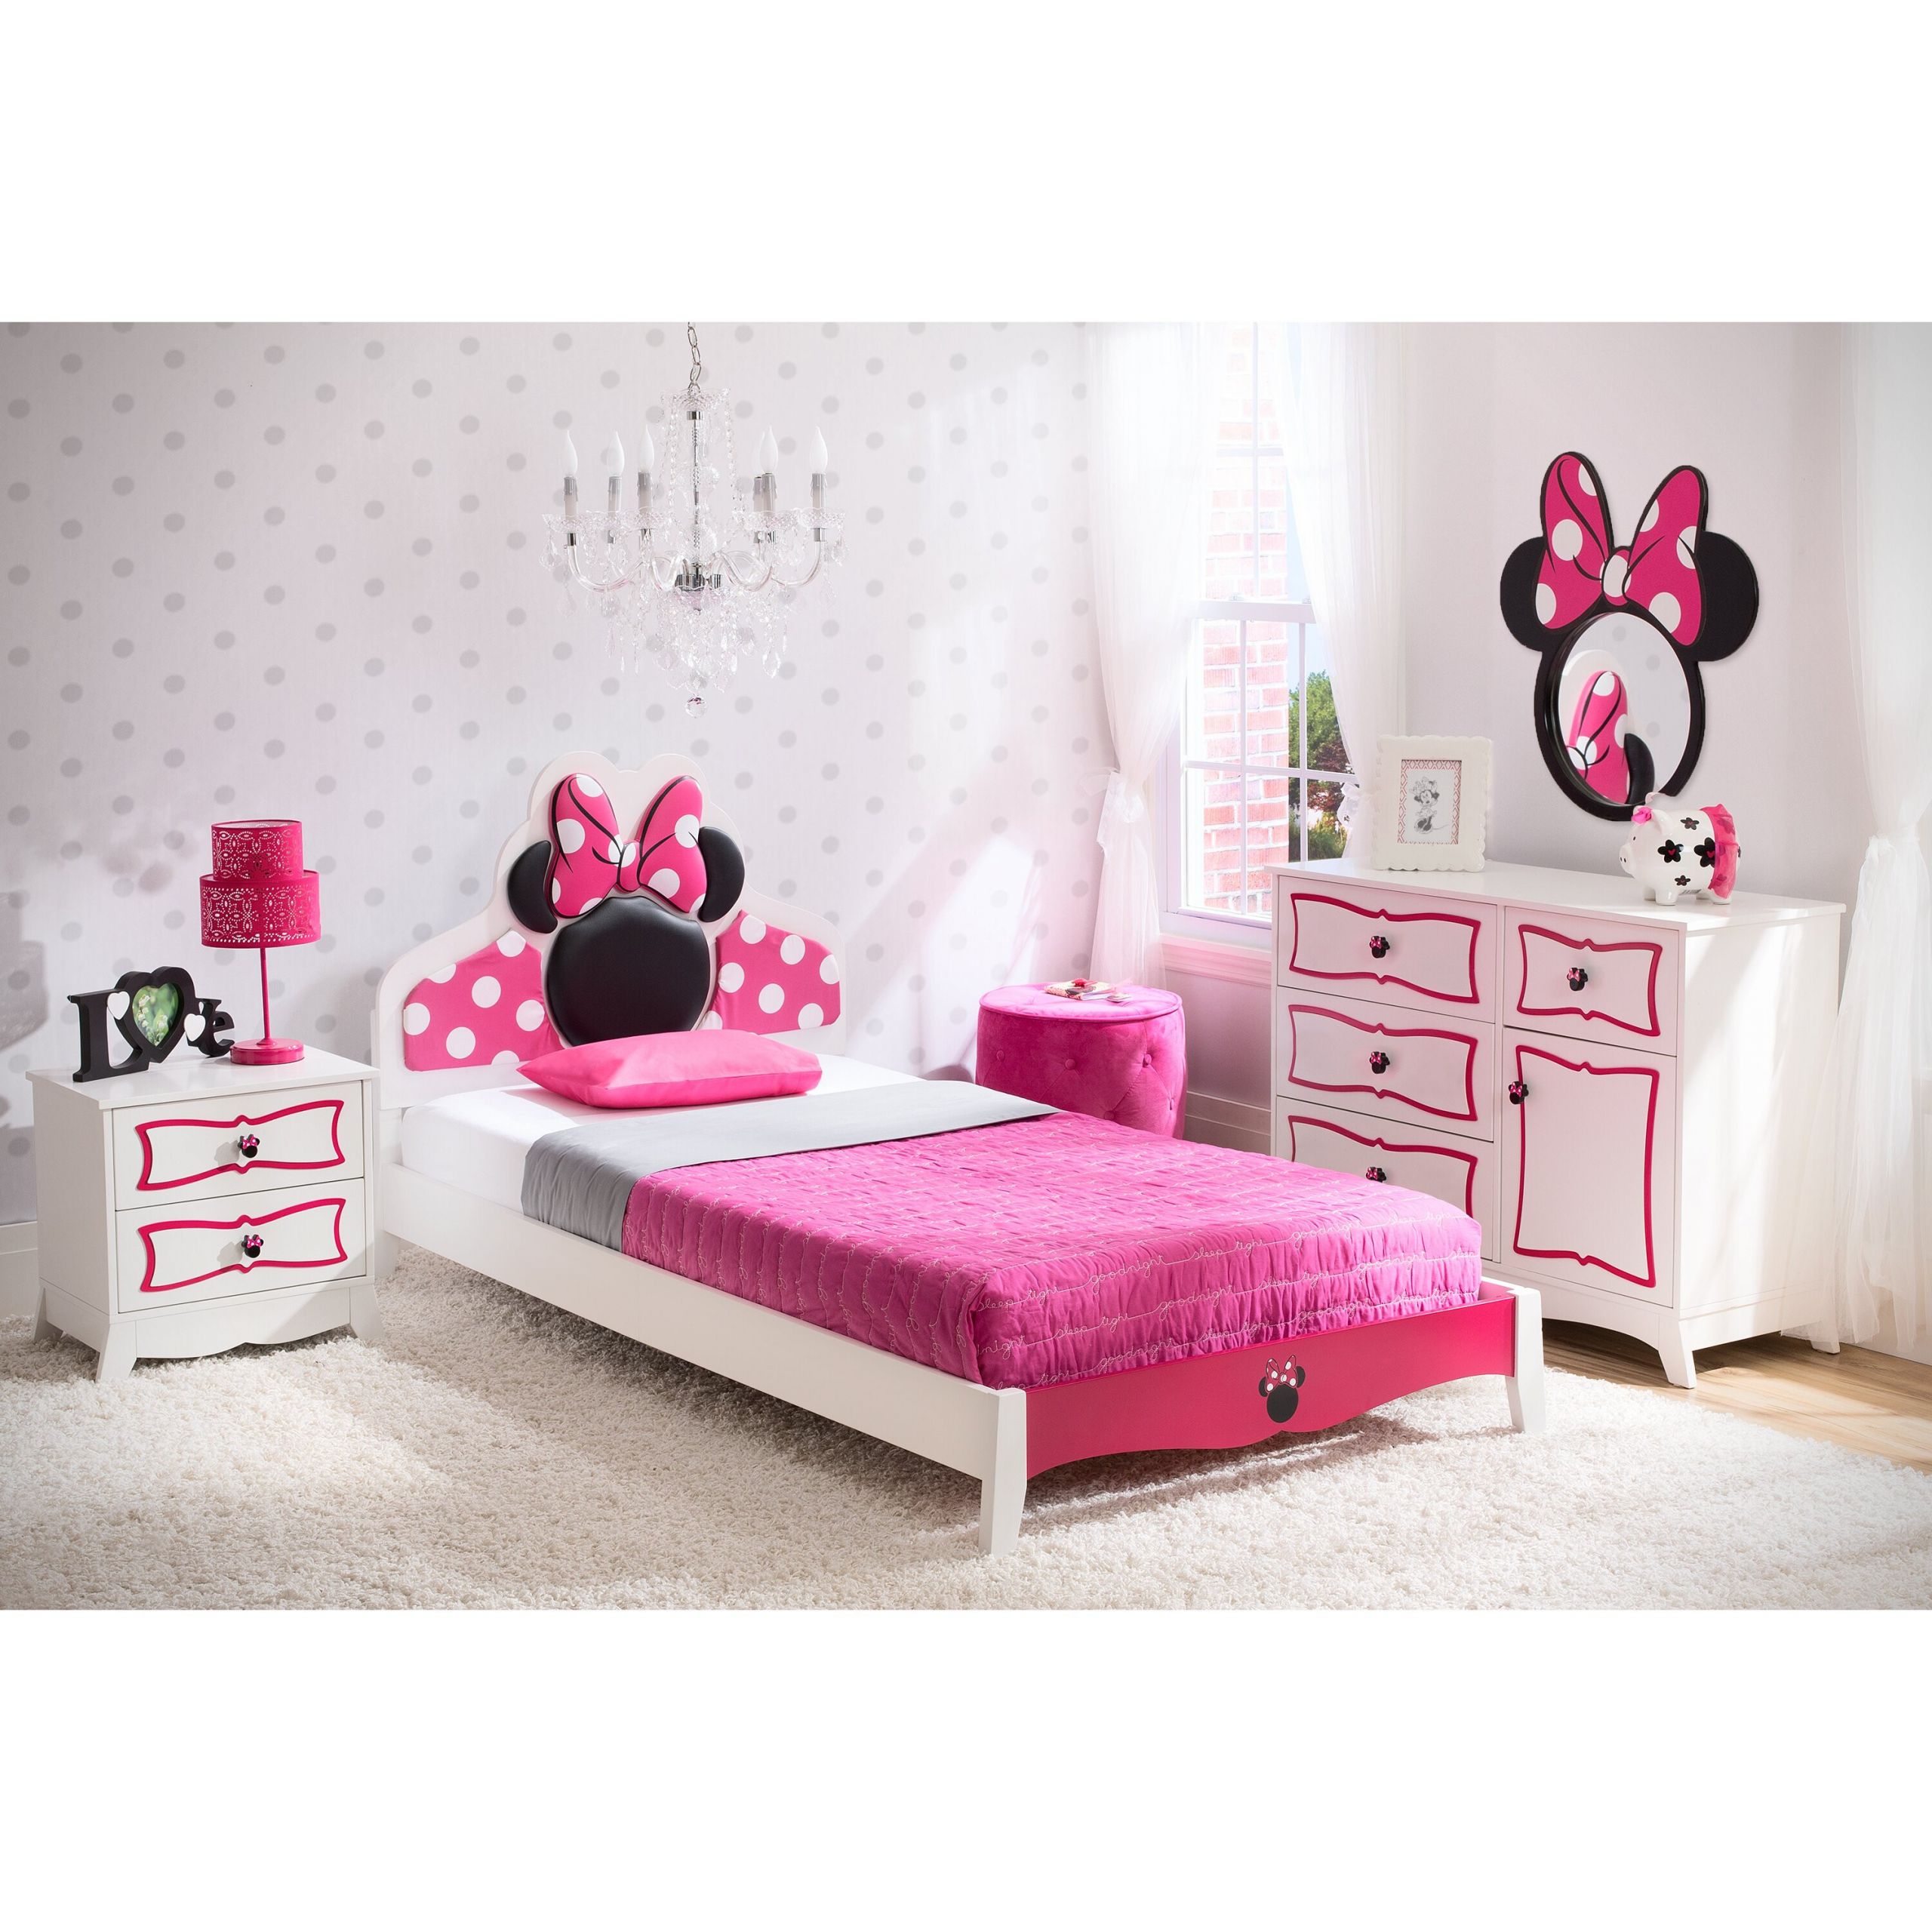 Kids Bedroom Sets
 Delta Children Disney Minnie Mouse Panel 4 Piece Bedroom